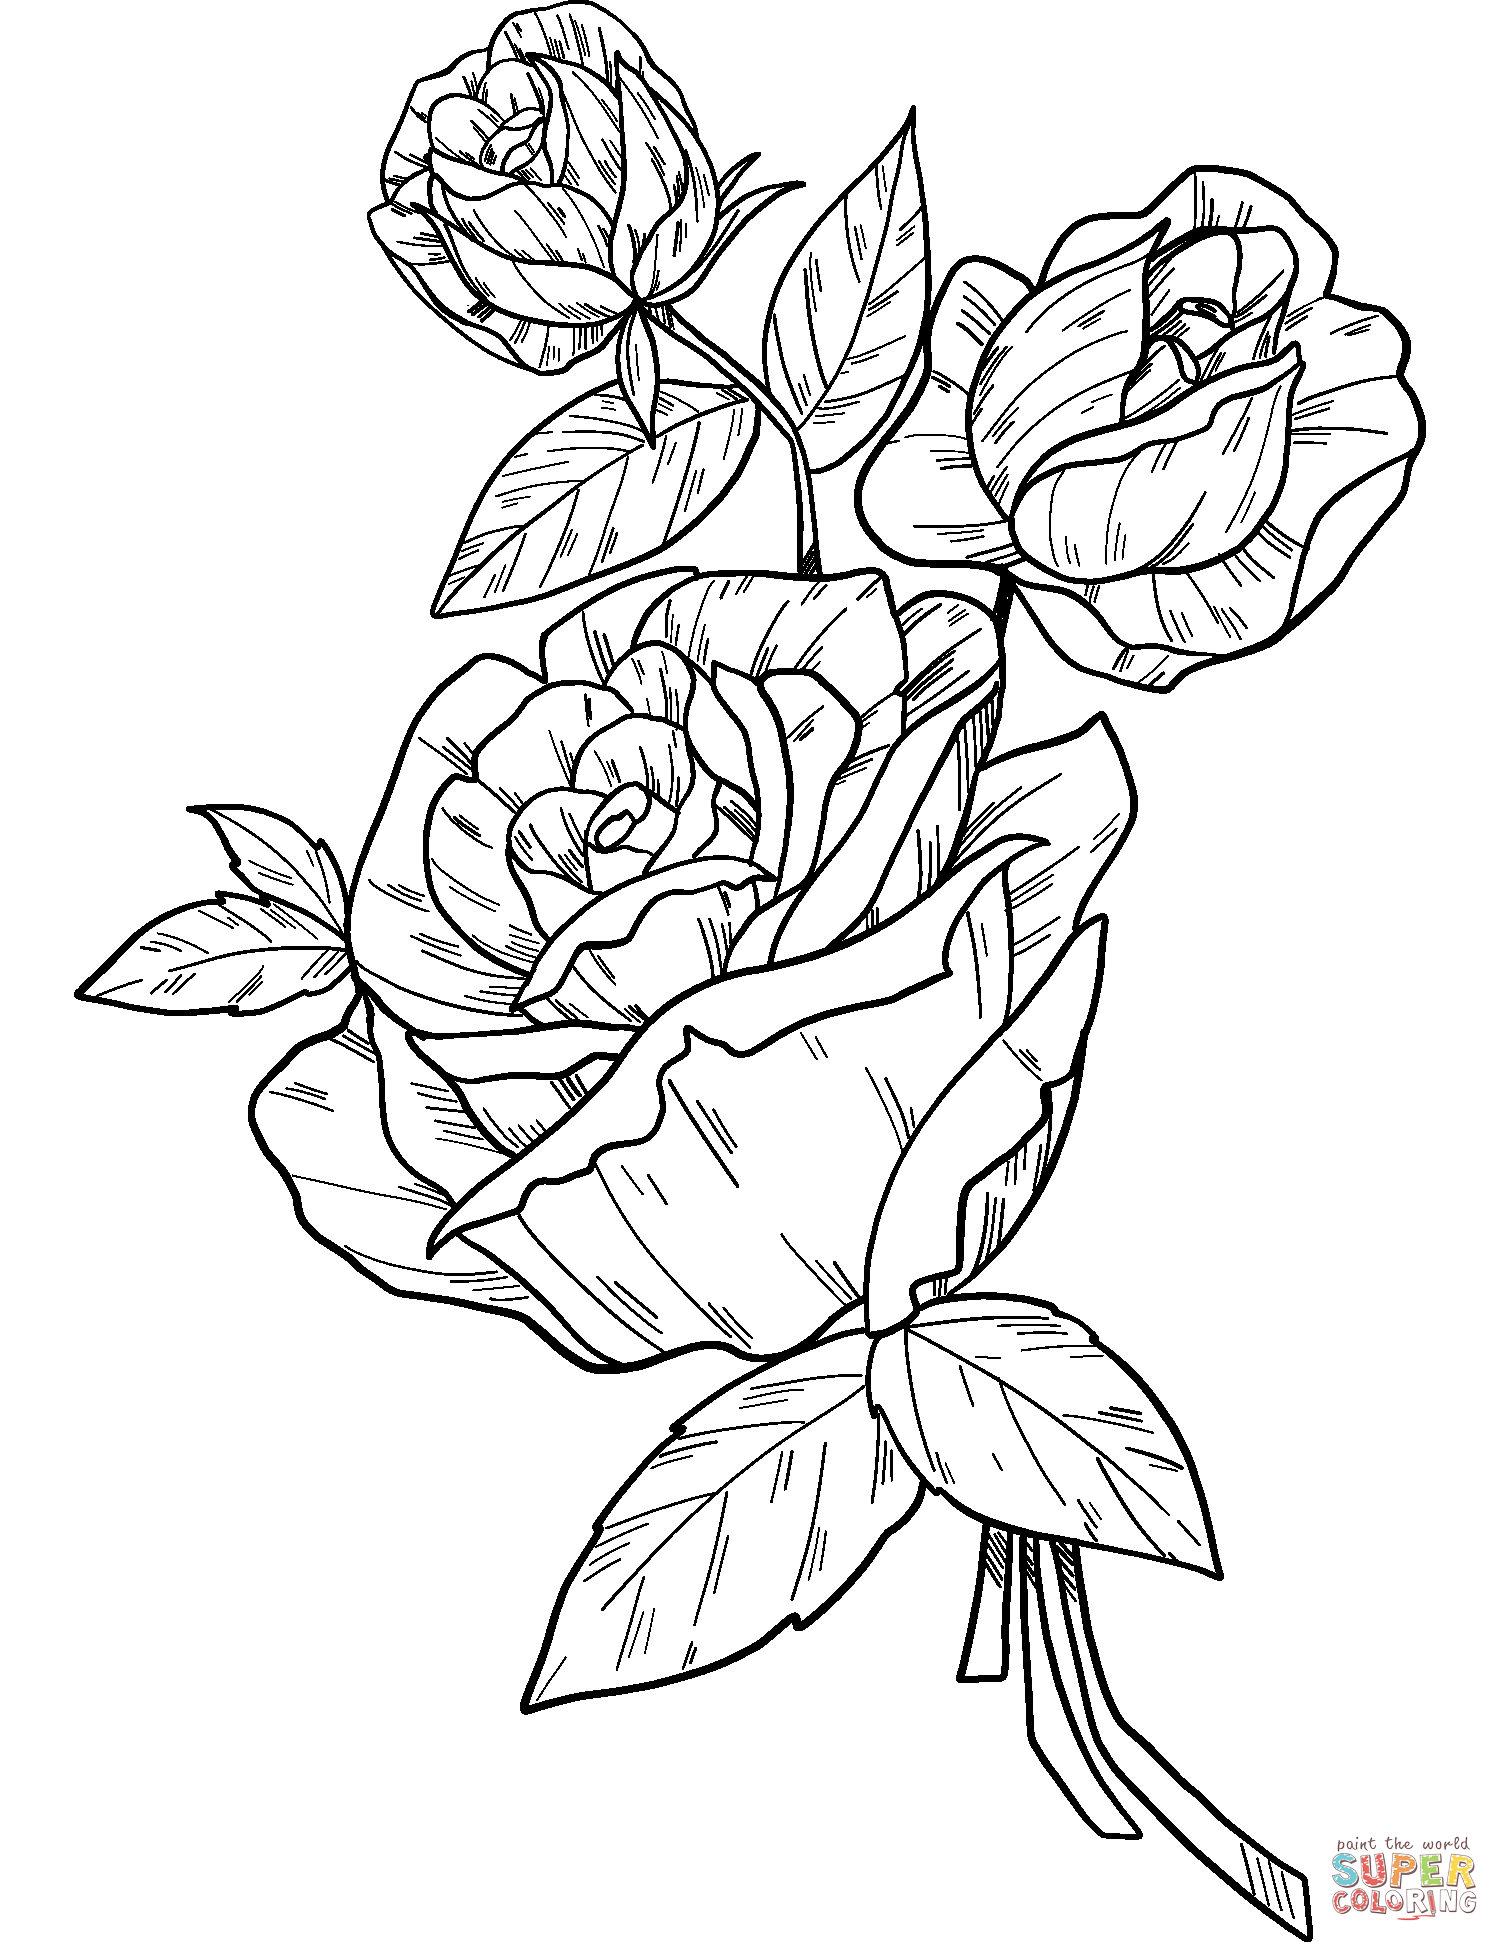 Des roses de roses